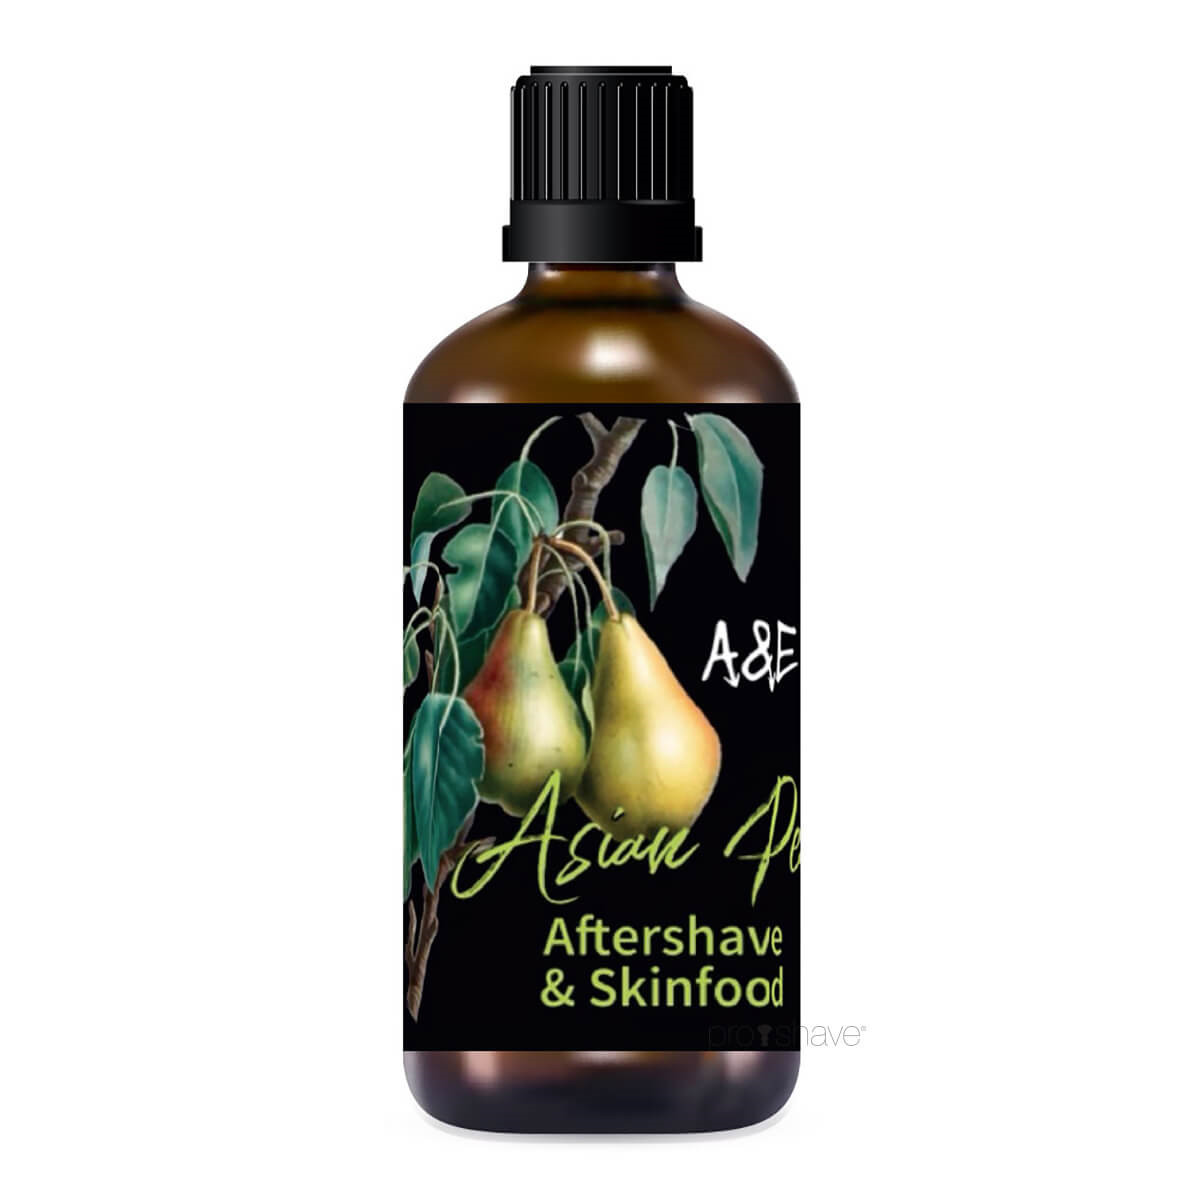 Billede af Ariana & Evans Aftershave, Asian Pear, 100 ml.